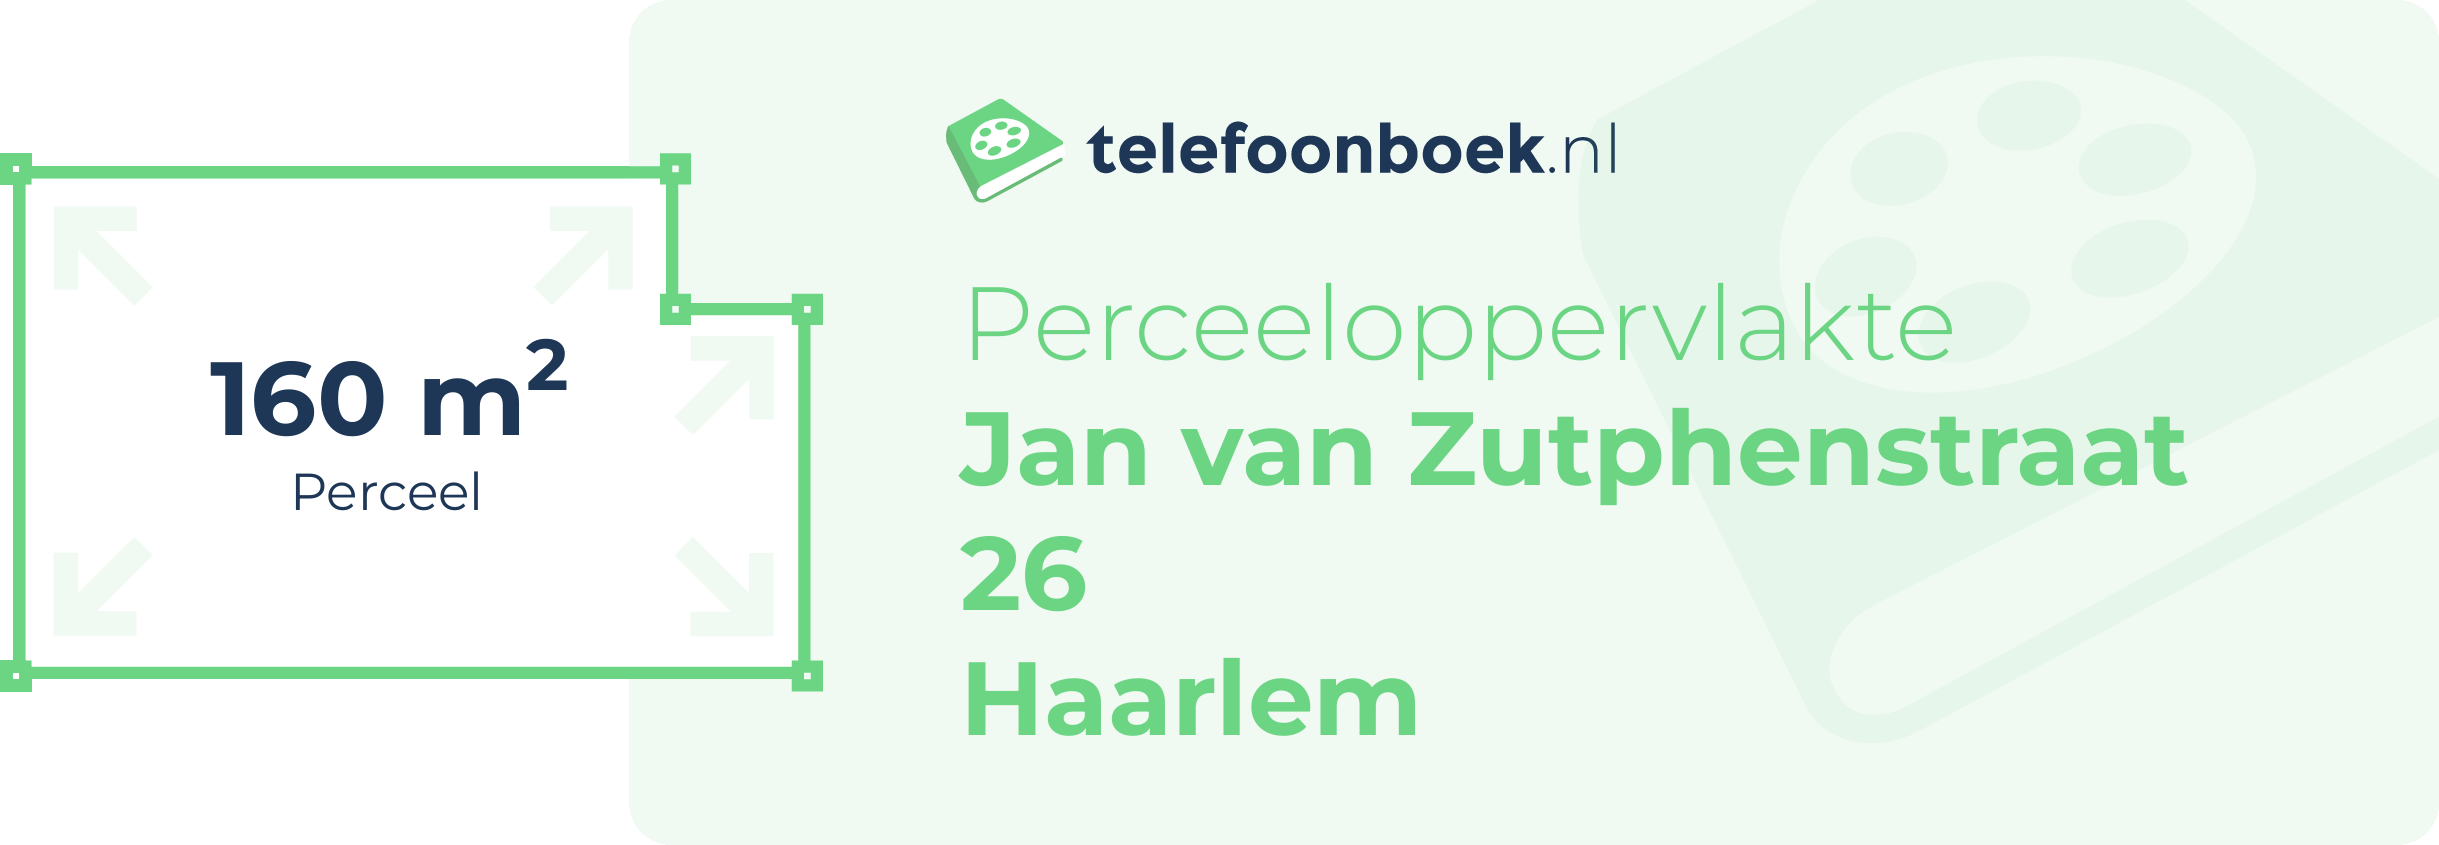 Perceeloppervlakte Jan Van Zutphenstraat 26 Haarlem